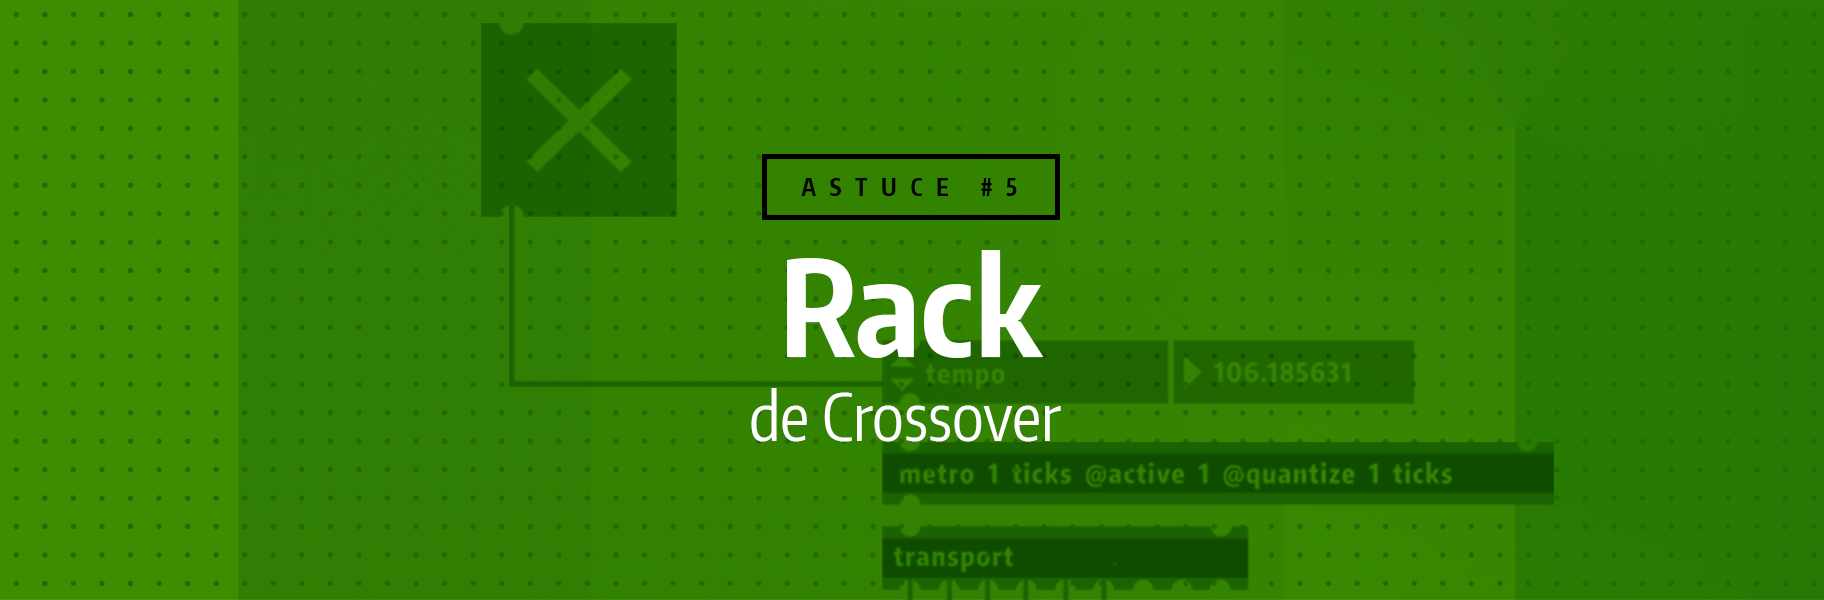 Astuce rapide #5 - Rack de crossover